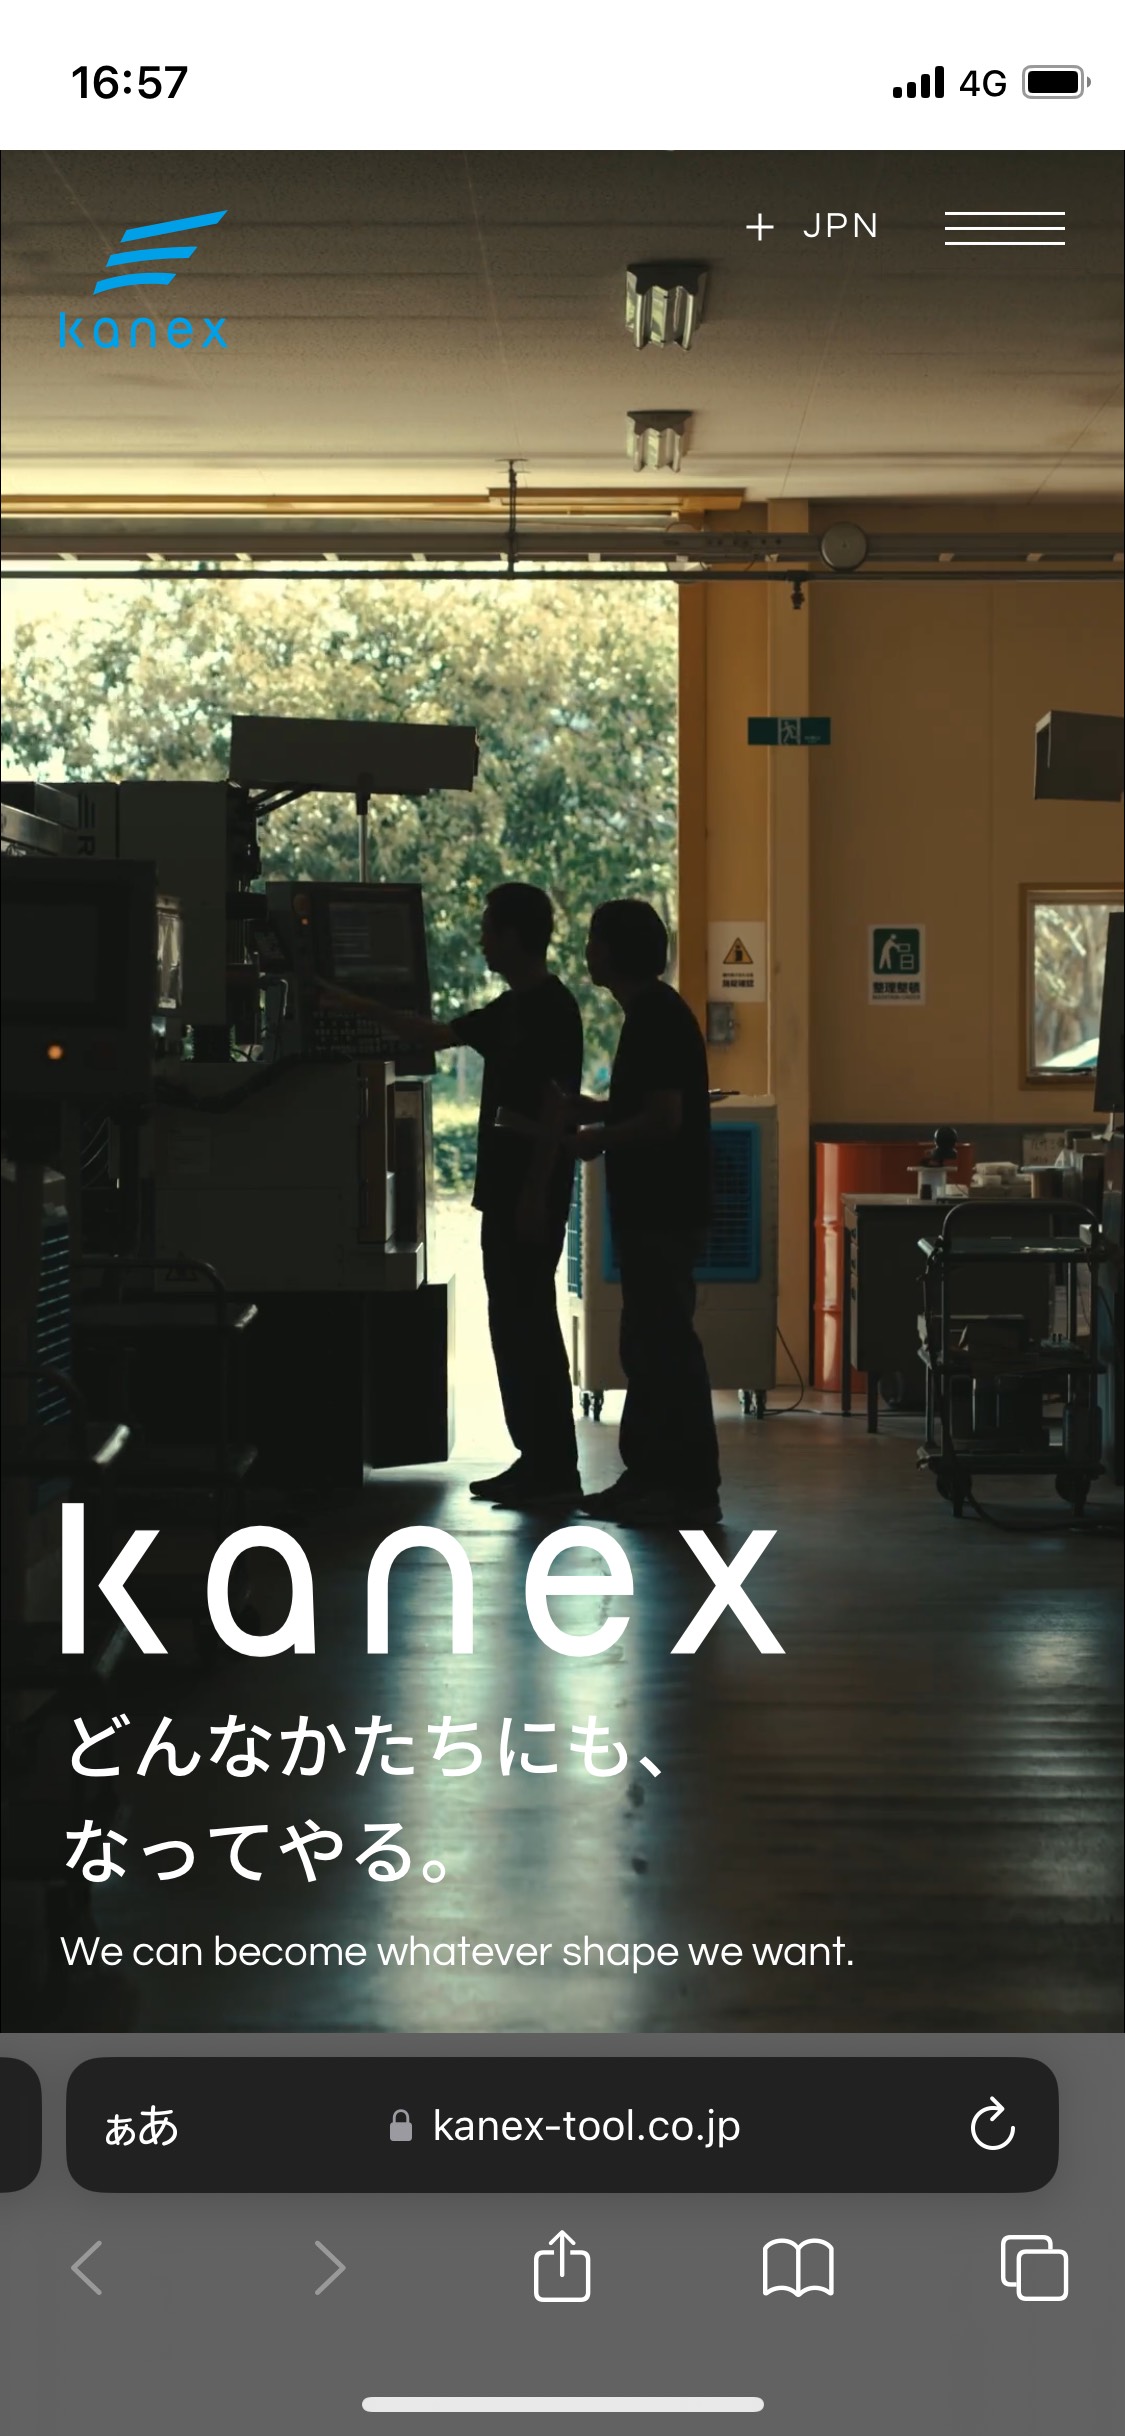 カネックス刃物工業株式会社 | 工業用・産業用機械刃物の製造 KANEXのサイト